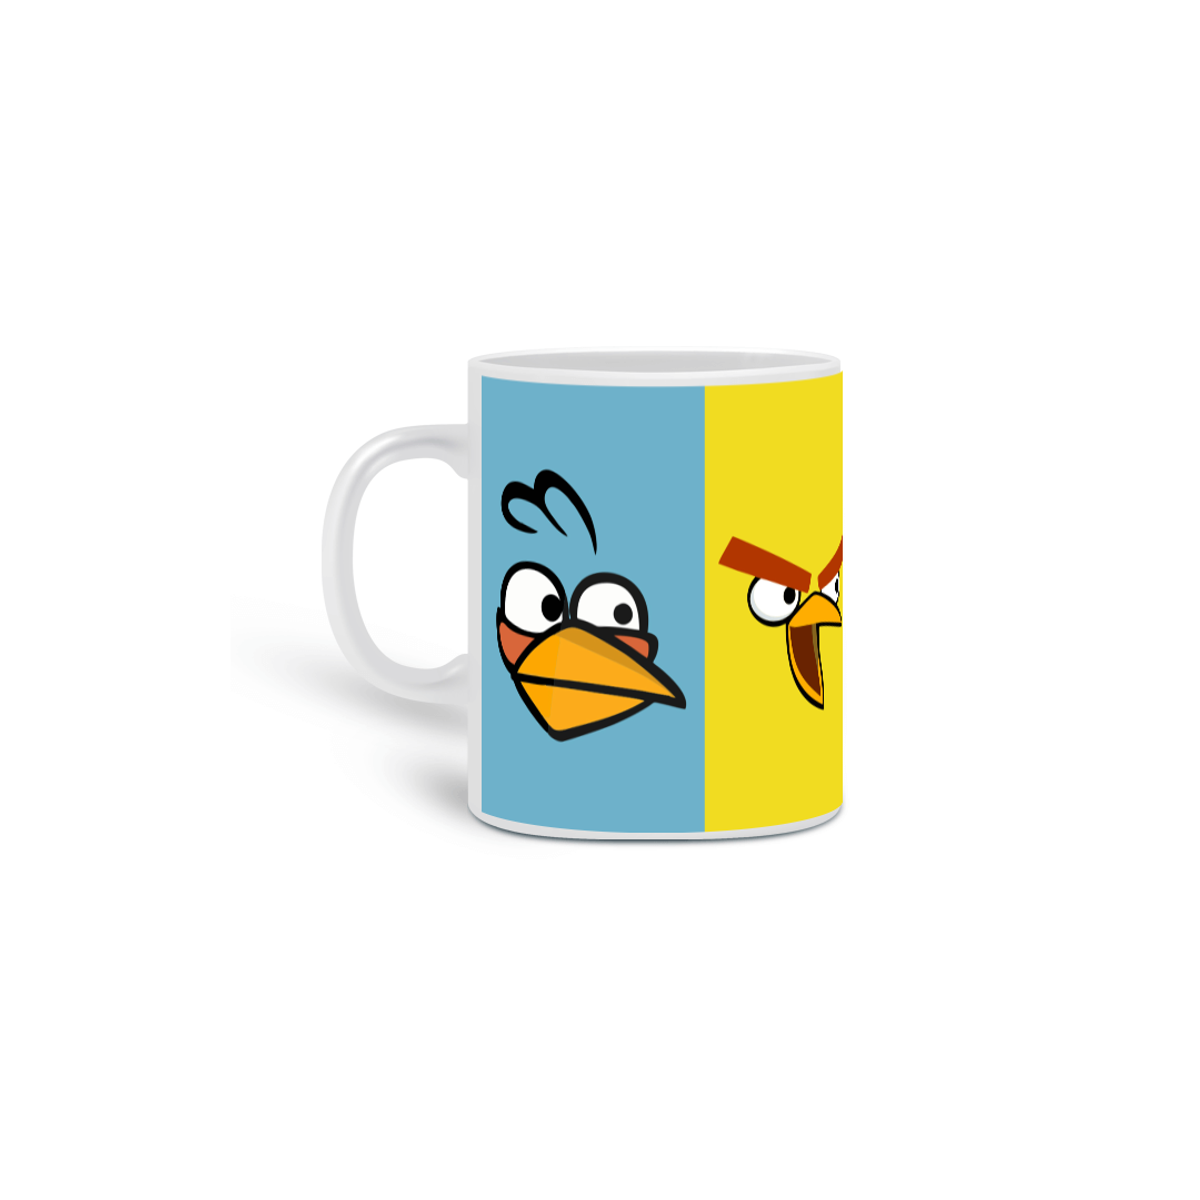 Nome do produto: Angry Bird